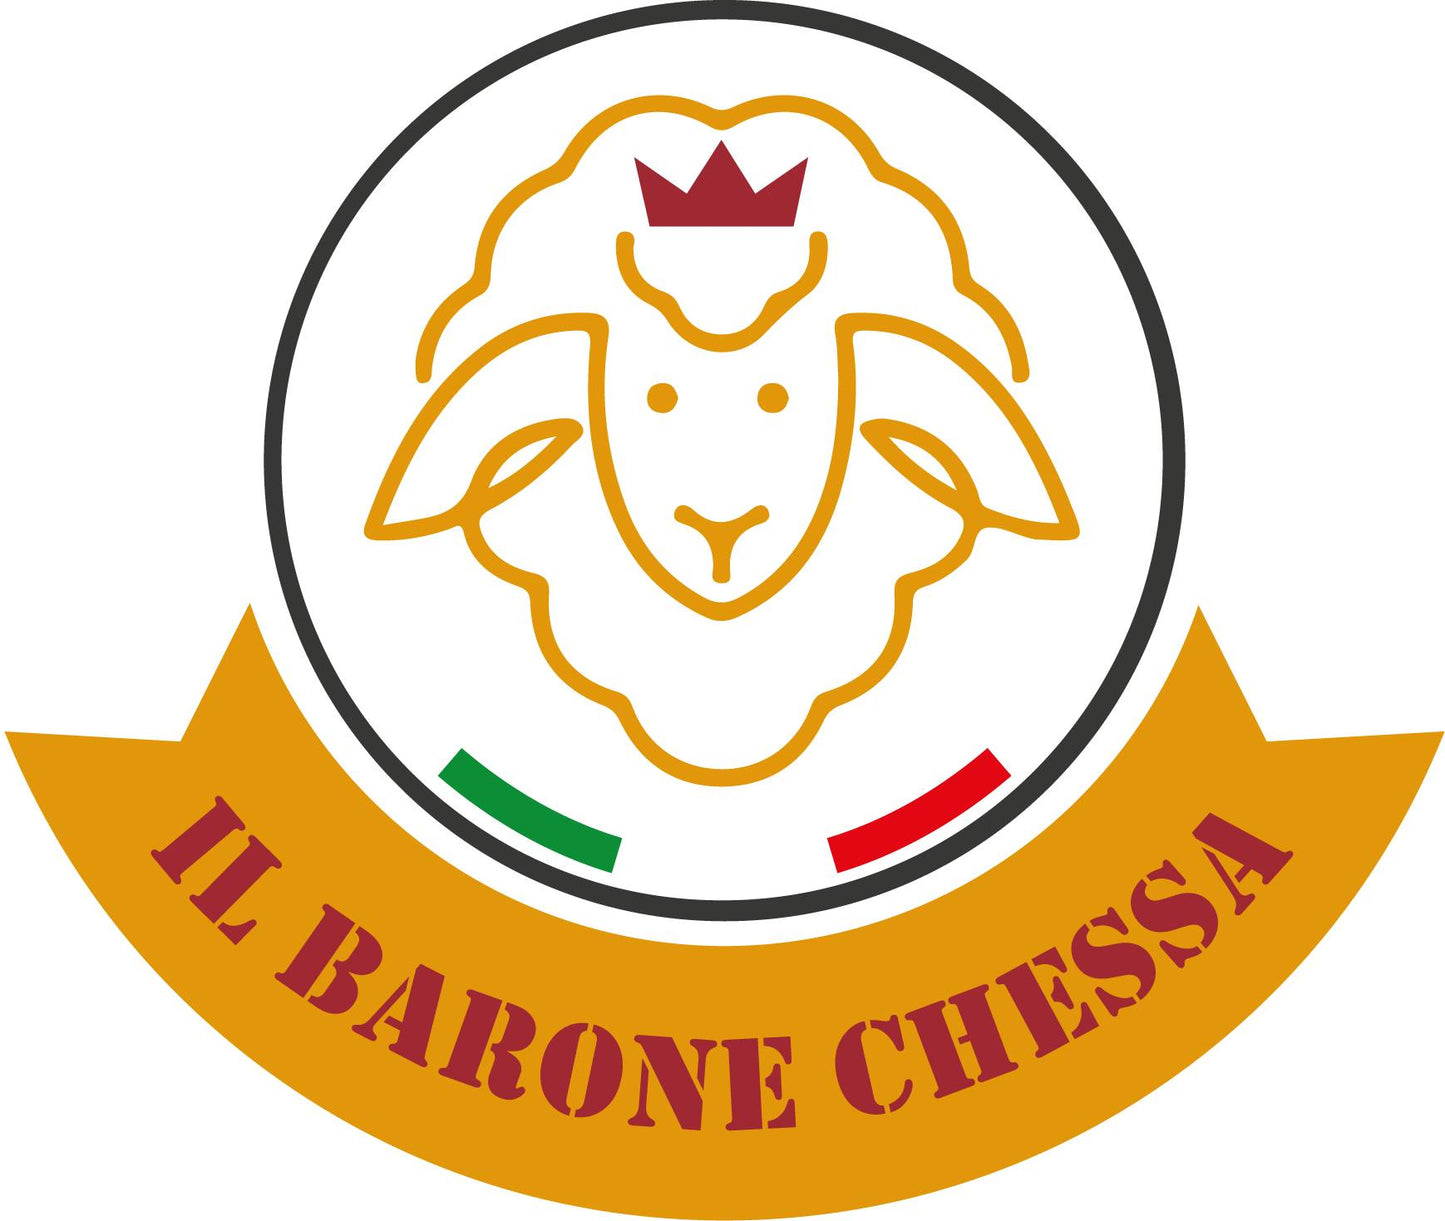 Pecorino di Osilo (SS) de la micro-laiterie artisanale "Barone Chessa"